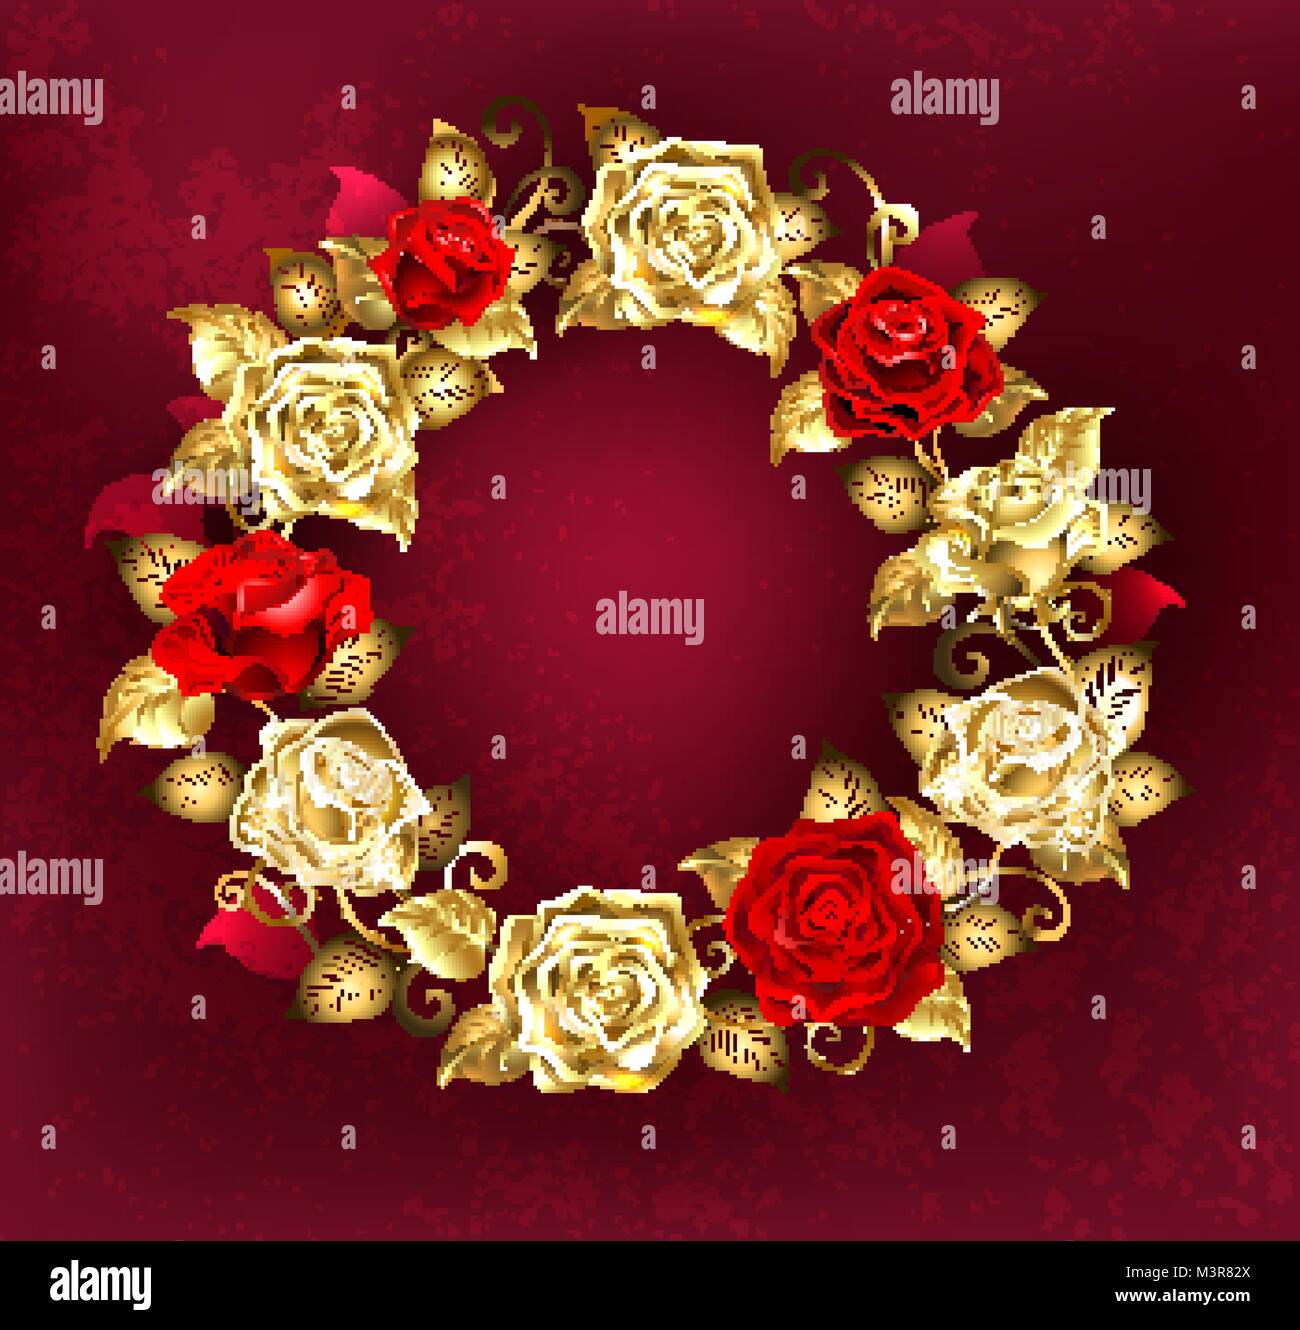 Runde Kranz von Rot und Gold Rosen mit goldenen Blätter auf einem roten strukturierten Hintergrund. Design mit Rosen. Gold stieg. Stock Vektor